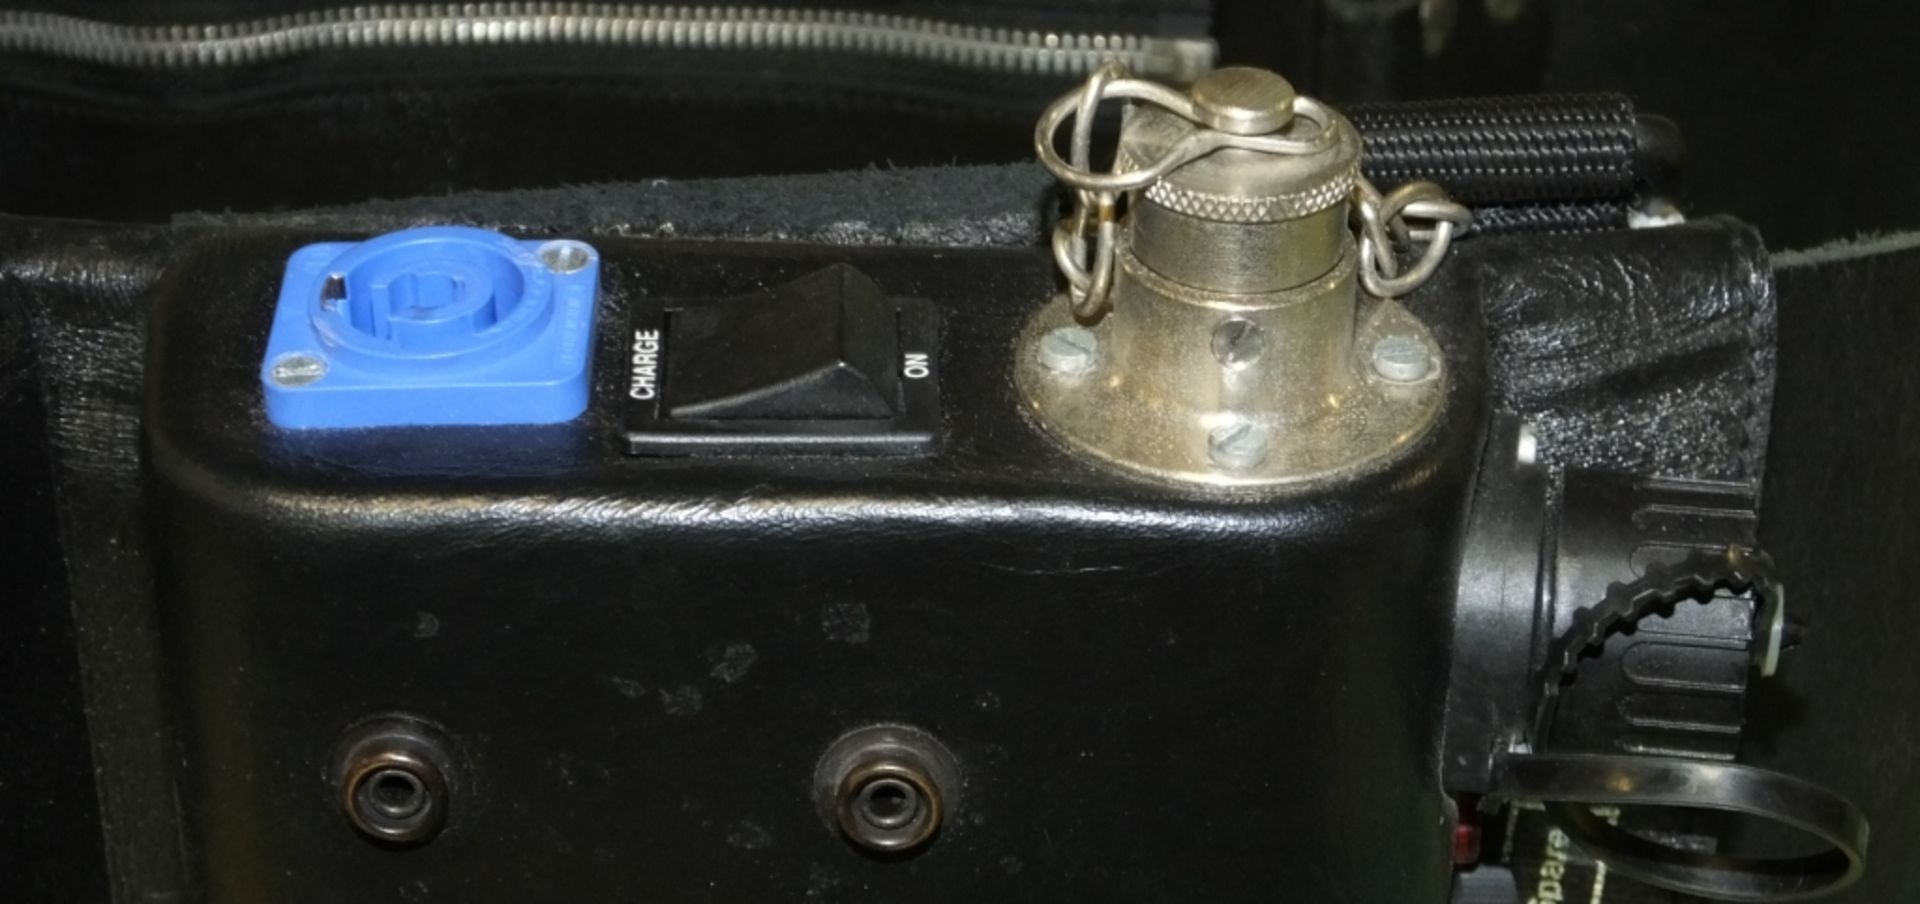 PAG Battery belt - 12V - 10Ah - Internal Charger 110V Input only - Image 2 of 3